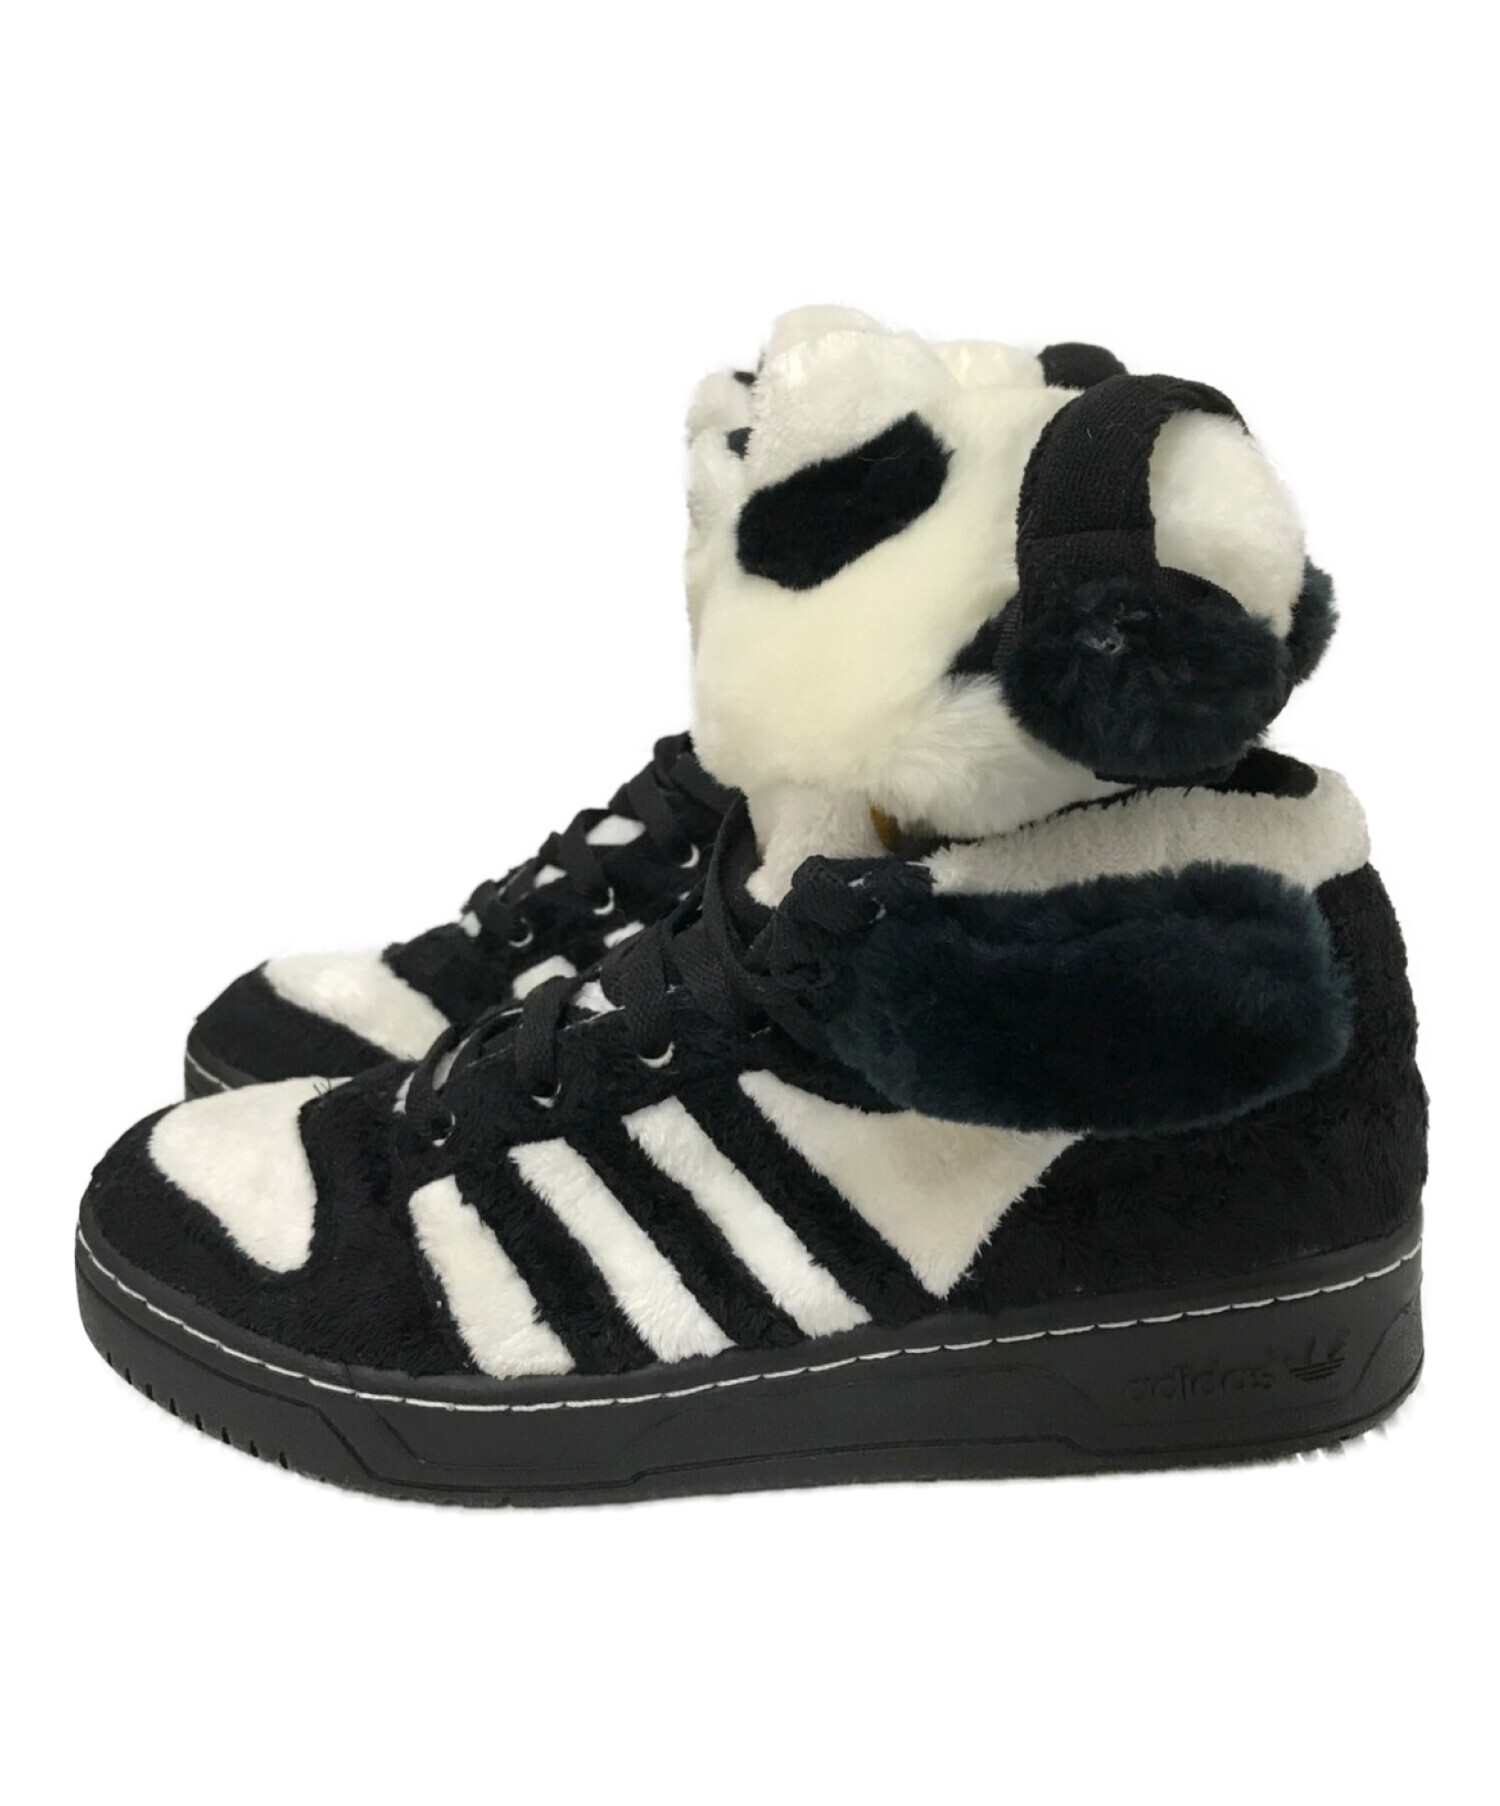 adidas (アディダス) JEREMY SCOTT (ジェレミースコット) JS PANDA BEAR ブラック×ホワイト サイズ:27.0㎝